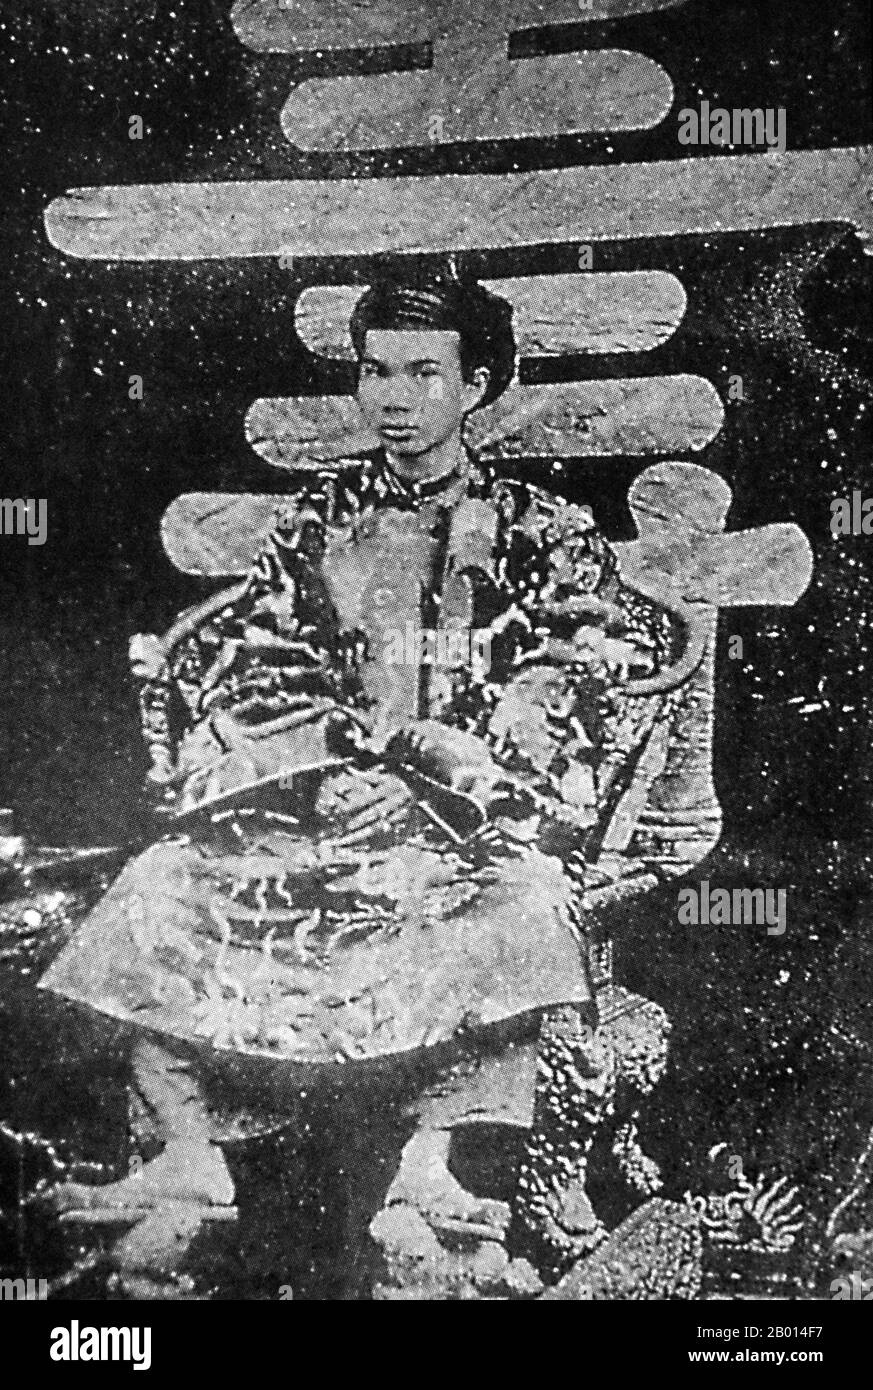 Vietnam: Imperatore Dong Khanh (19 febbraio 1864 - 28 gennaio 1889), nono imperatore della dinastia Nguyen. Đồng Khánh (Nguyễn Phúc Ưng Kỷ, 19 febbraio 1864 – 28 gennaio 1889) è stato il 9° imperatore della dinastia Nguyễn del Vietnam. Regnò 3 anni tra il 1885 e il 1889, e fu considerato uno degli imperatori più disprezzati della sua epoca. Foto Stock